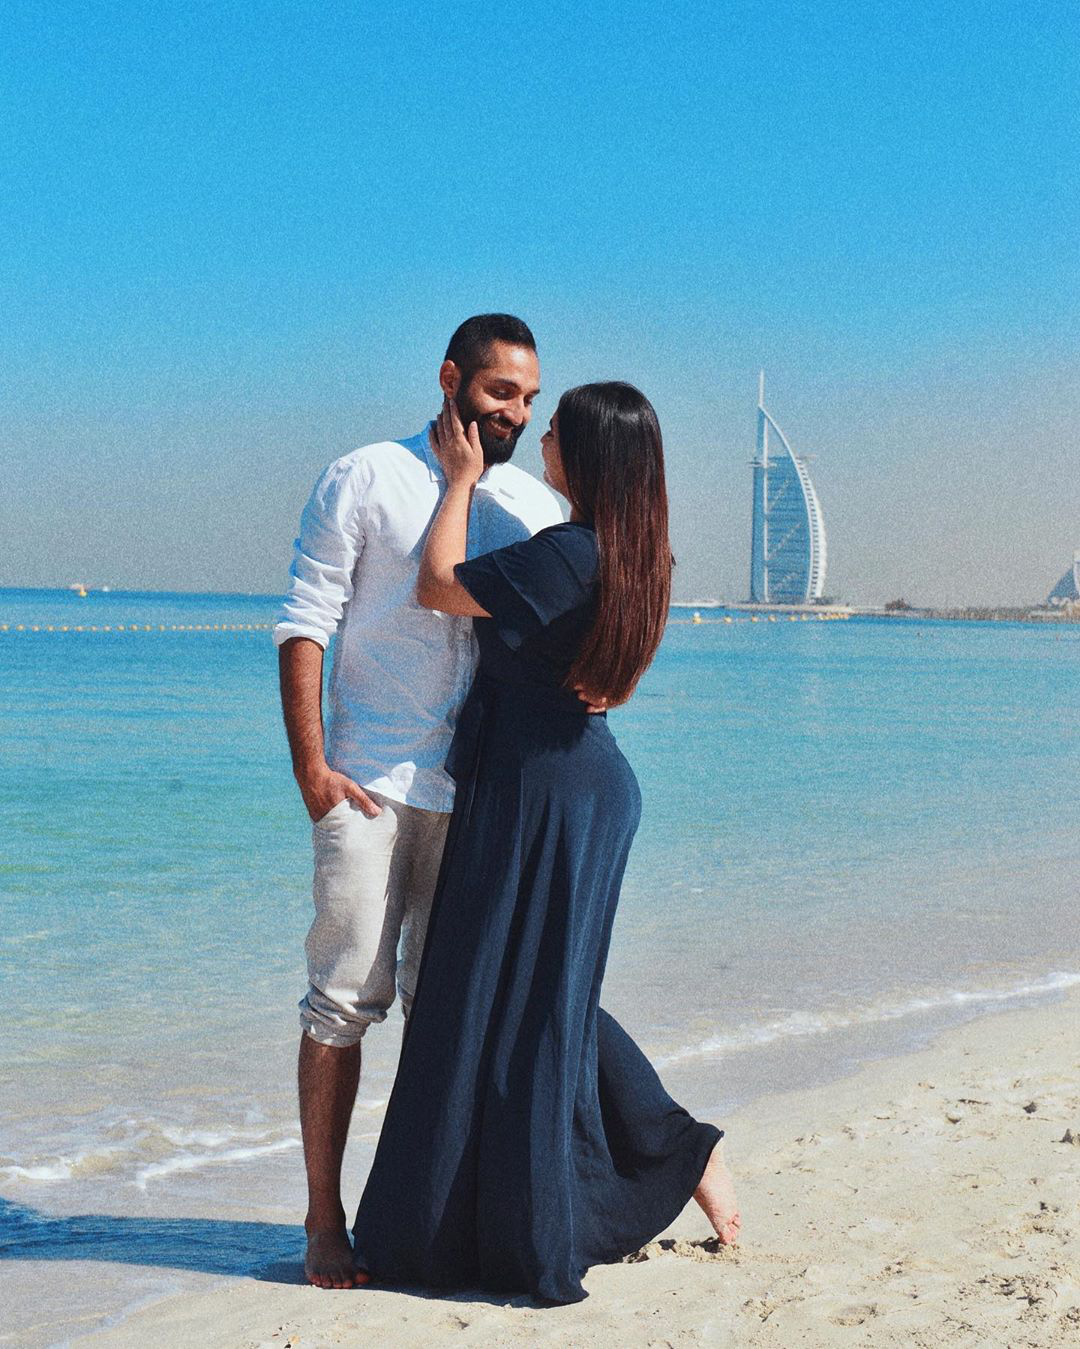 Du lịch Dubai và 9 điều cấm kị khiến du khách ngỡ ngàng: Mang thuốc có thể bị phạt, hôn nhau ở nơi cộng cộng bị xem là phạm luật! - Ảnh 4.